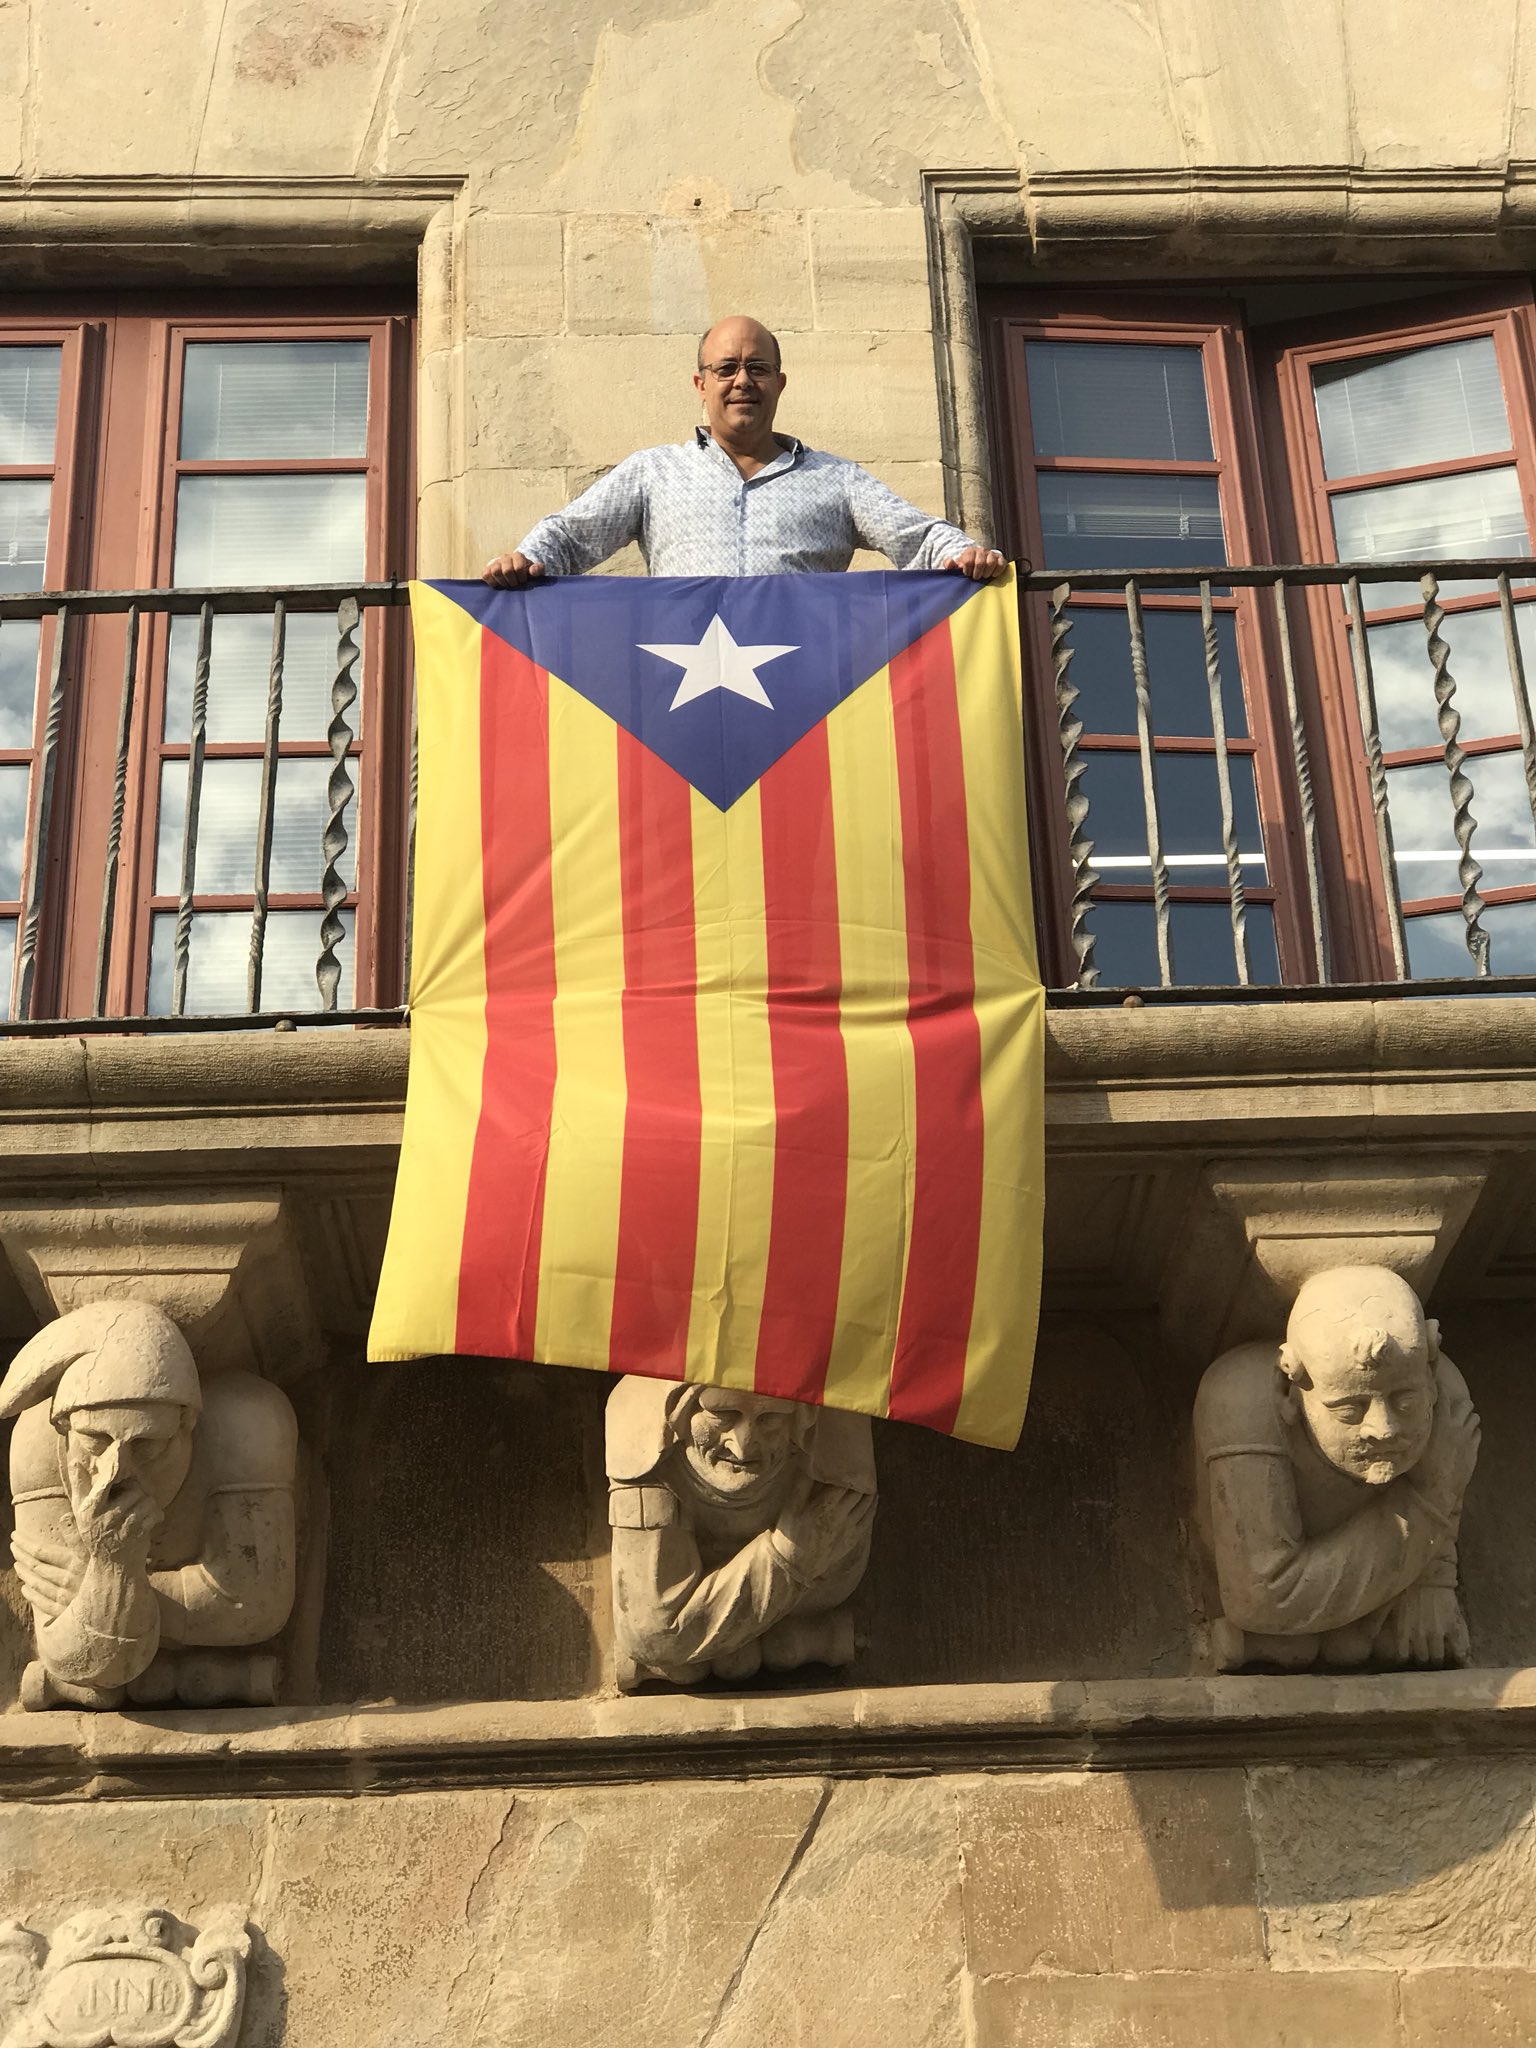 L'alcalde de Cervera exhibeix una estelada des de l'Ajuntament per denunciar-ne la prohibició